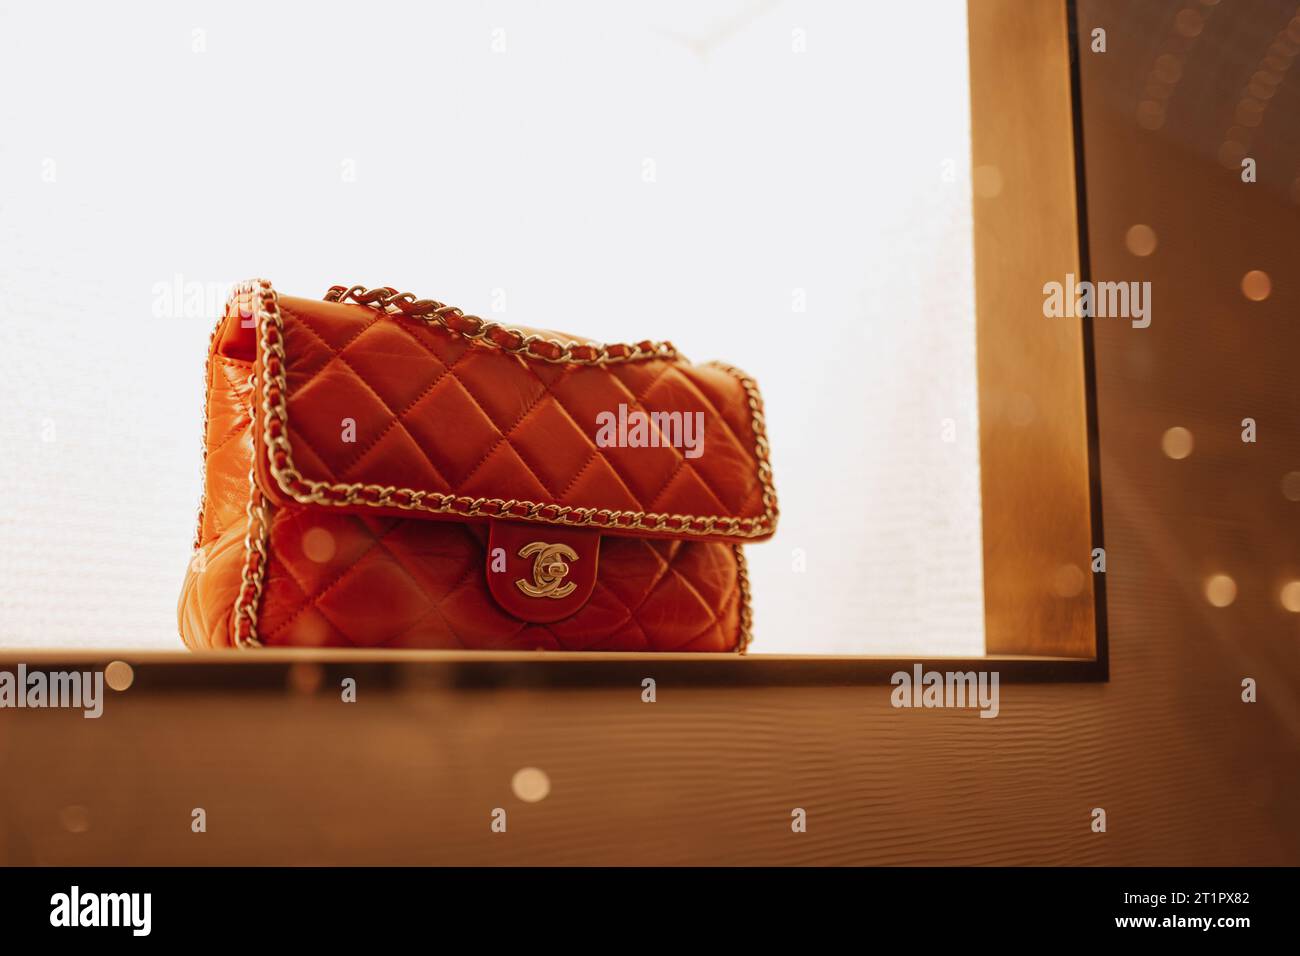 Sac à main Chanel féminin rouge orange chic avec chaîne dorée dans la fenêtre d'un magasin de luxe. Chanel est une marque de haute couture fondée par Coco Chanel en 19 Banque D'Images